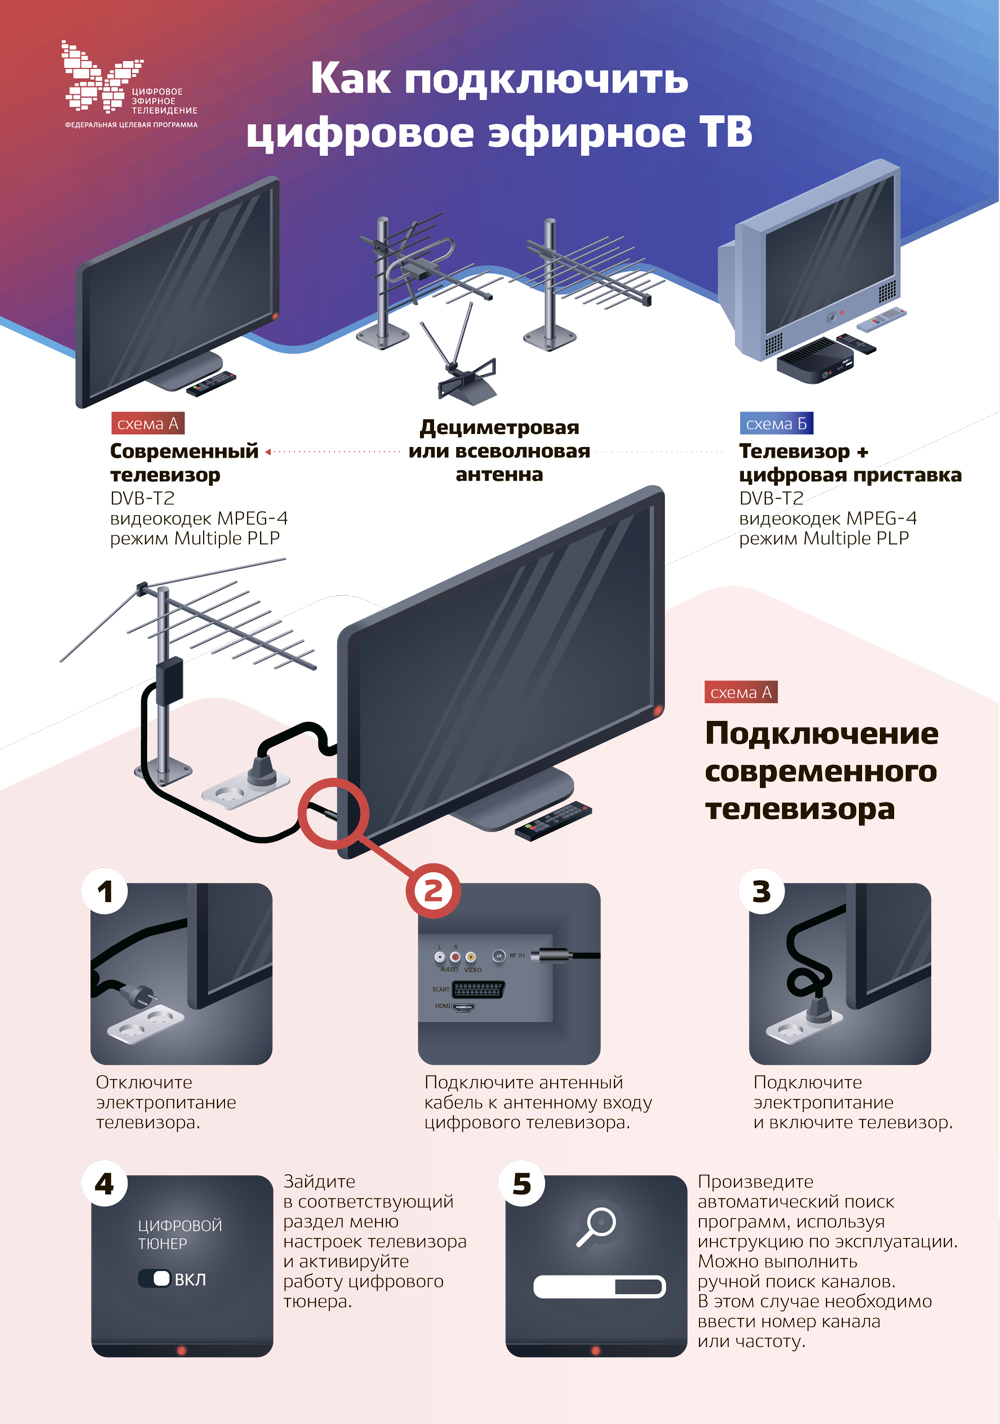 Как подключить к телевизору цифровую приставку и антенну самсунг